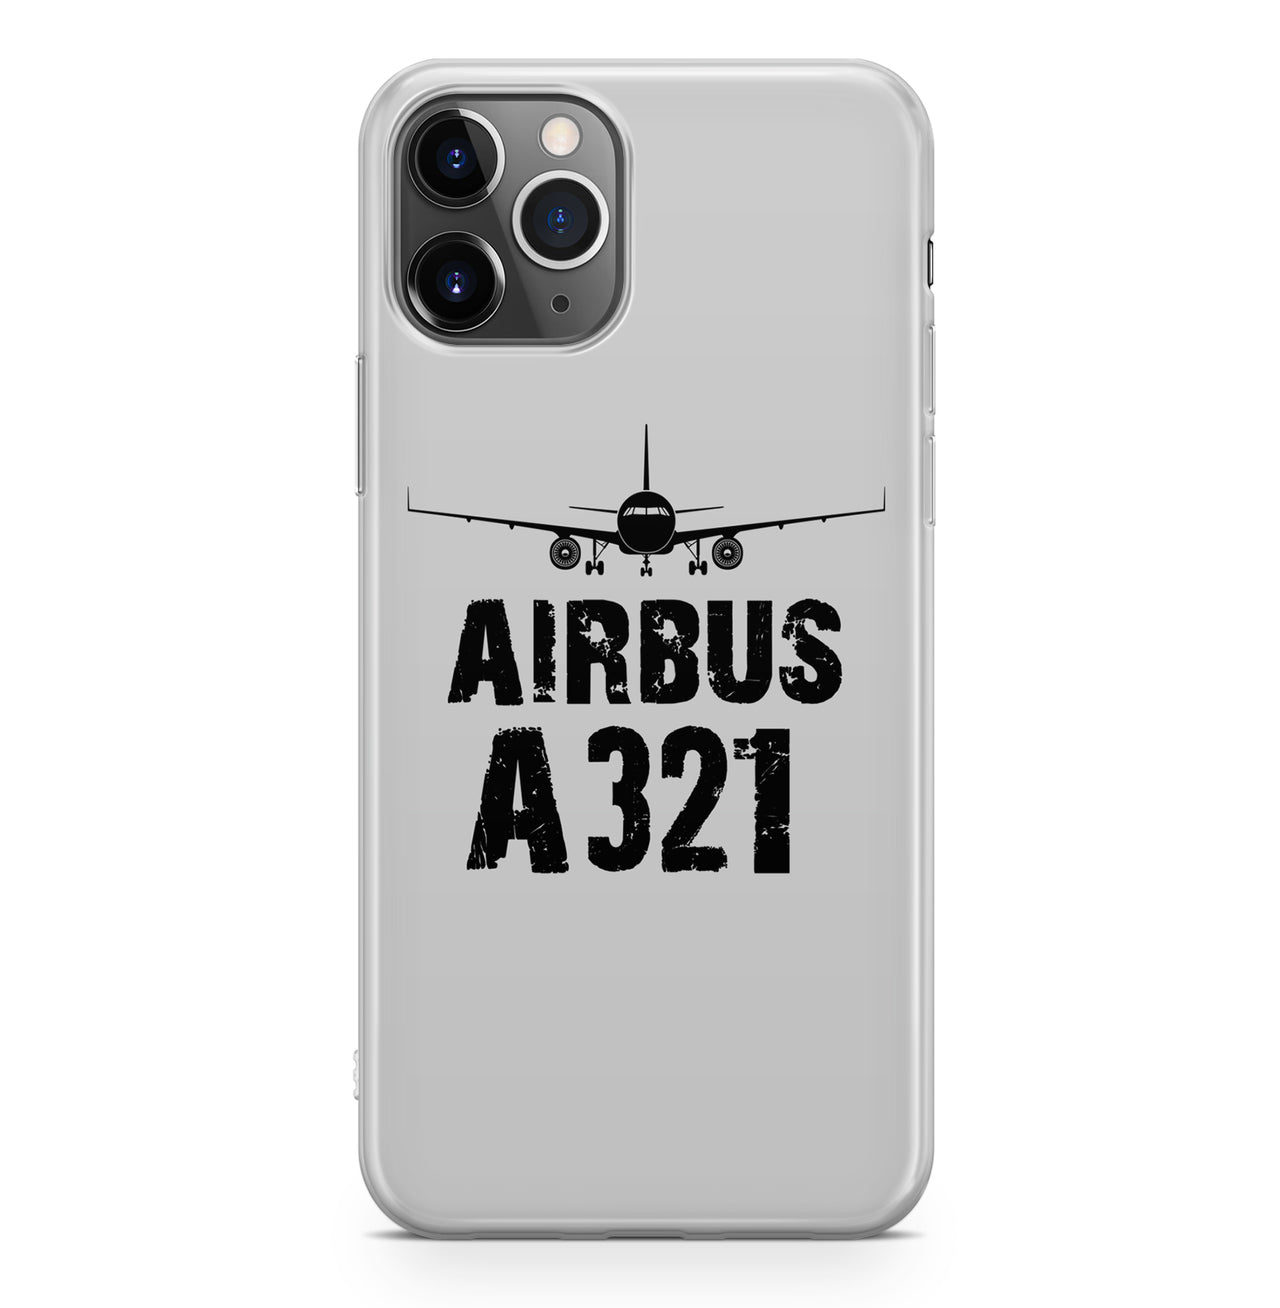 Airbus A321 & Plane Designed iPhone Cases